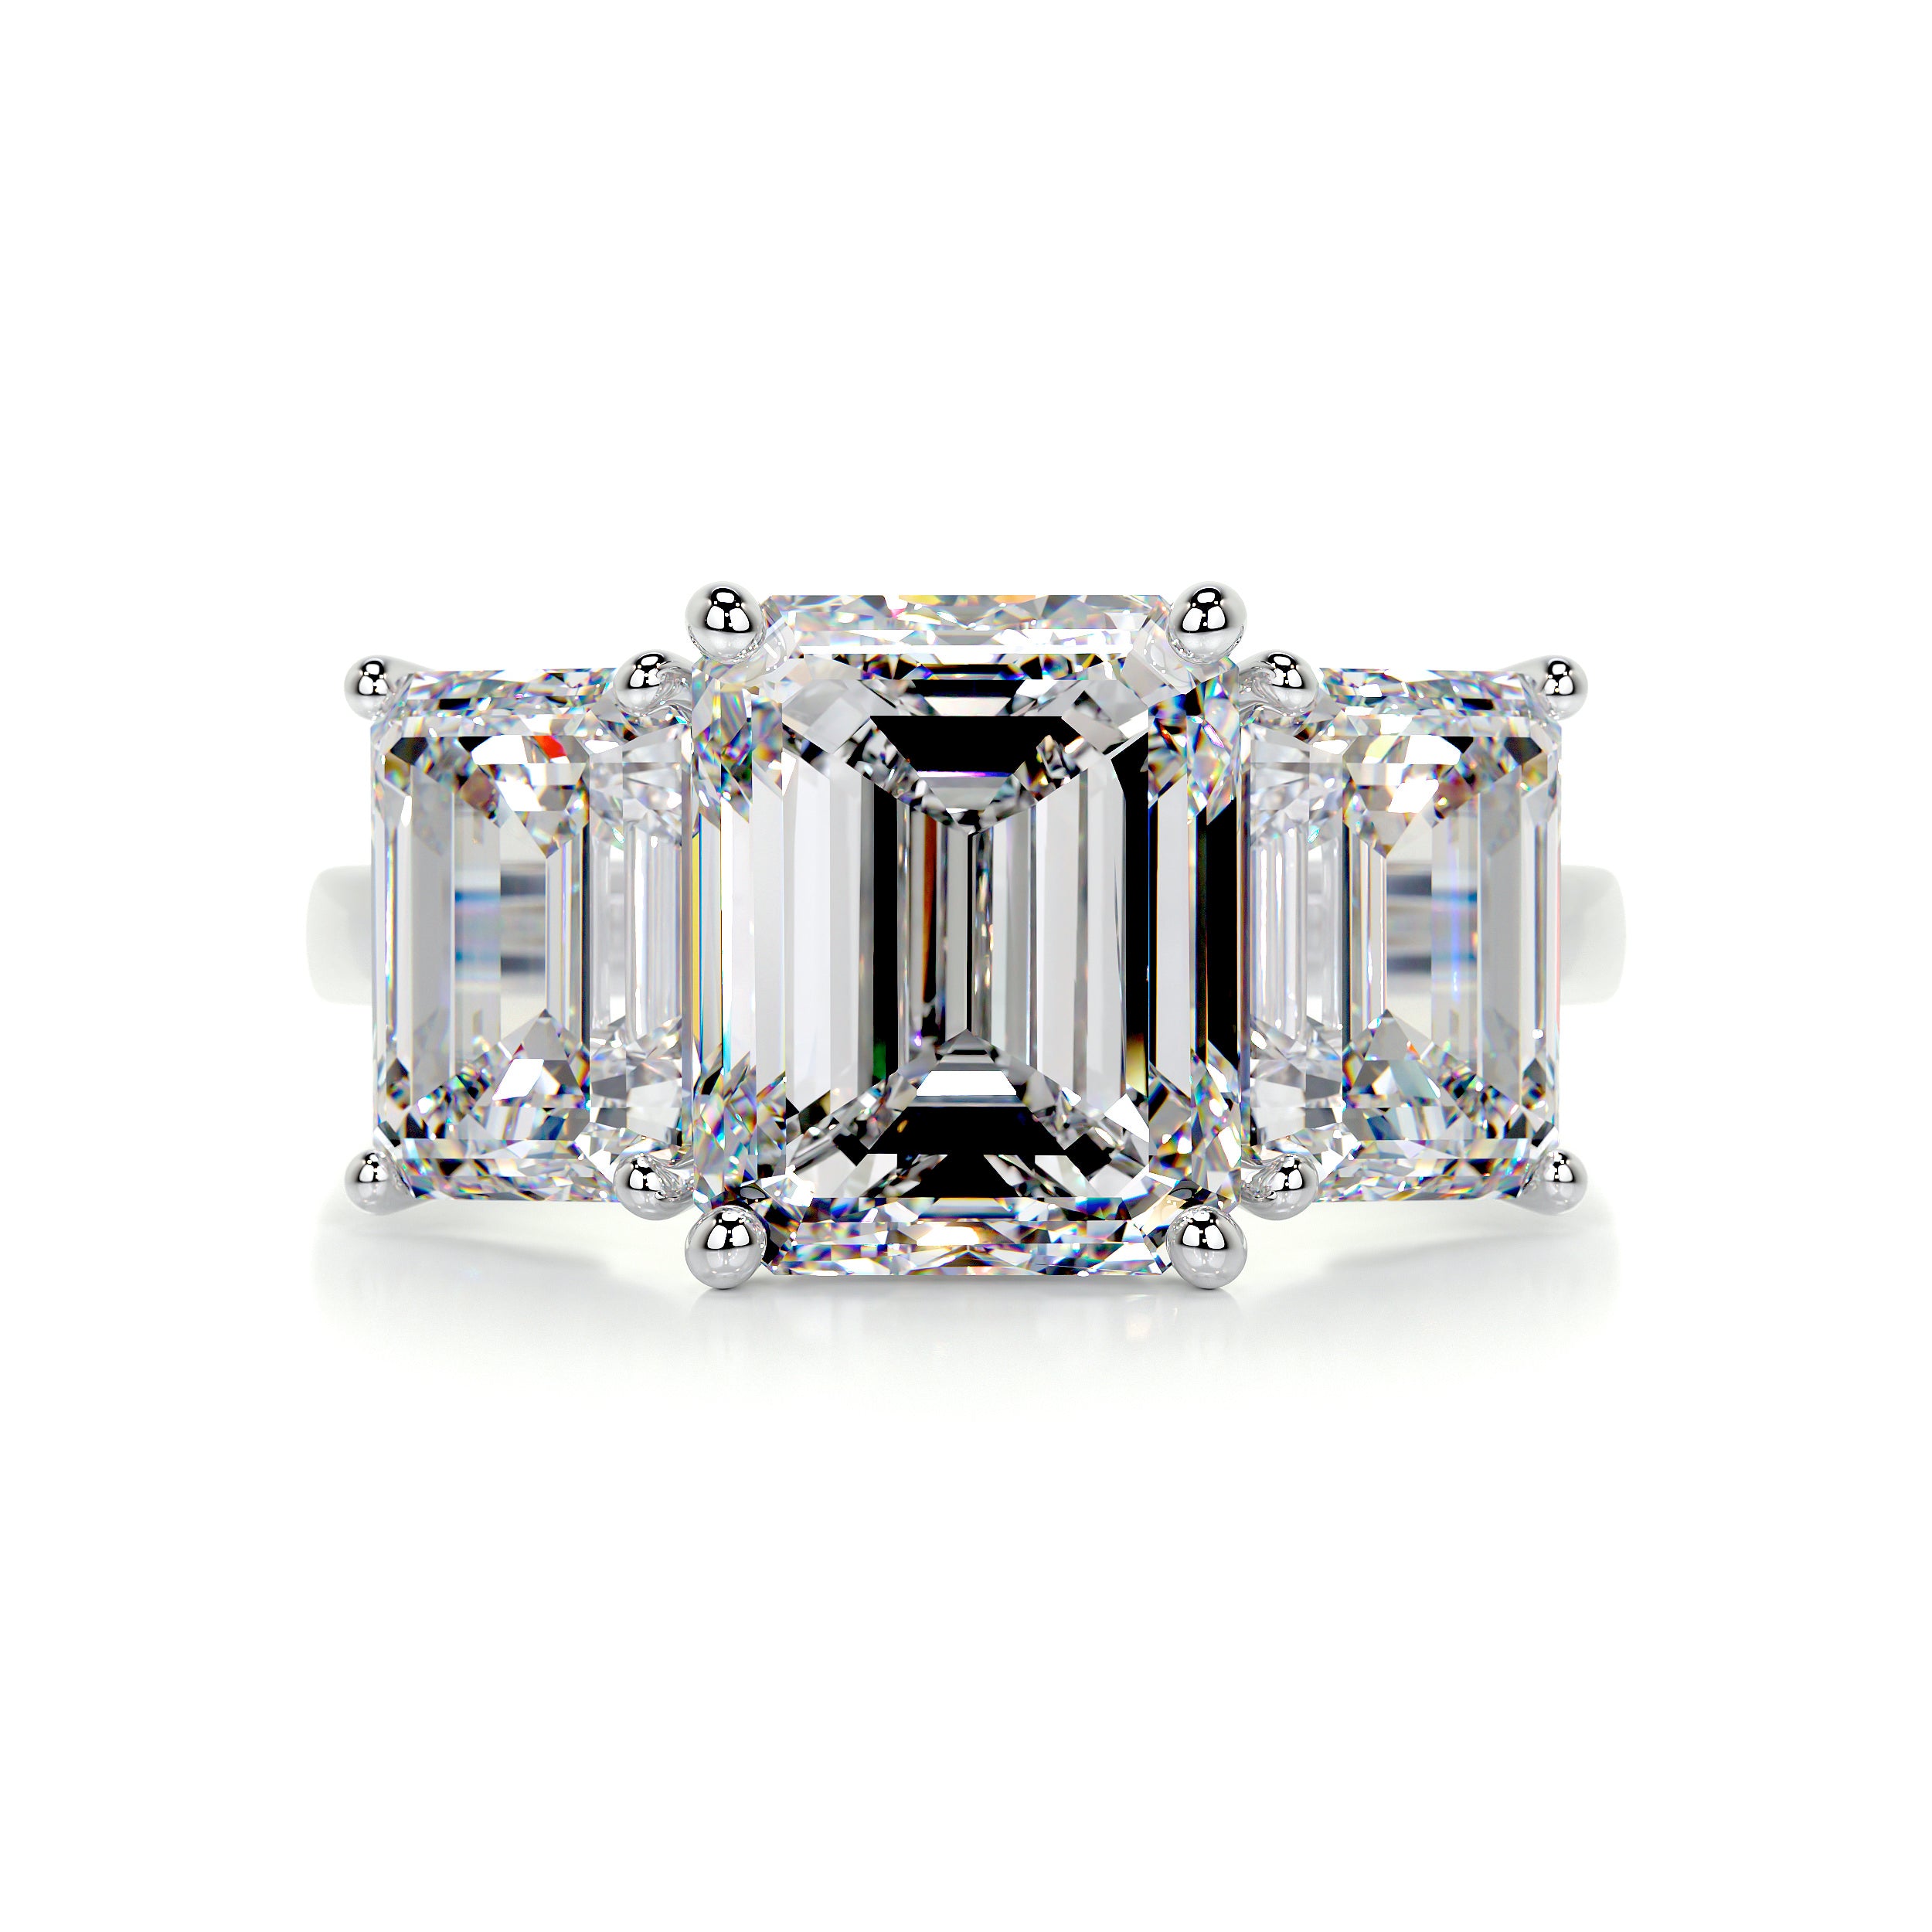 Amanda Diamond Engagement Ring   (4 Carat) -14K White Gold